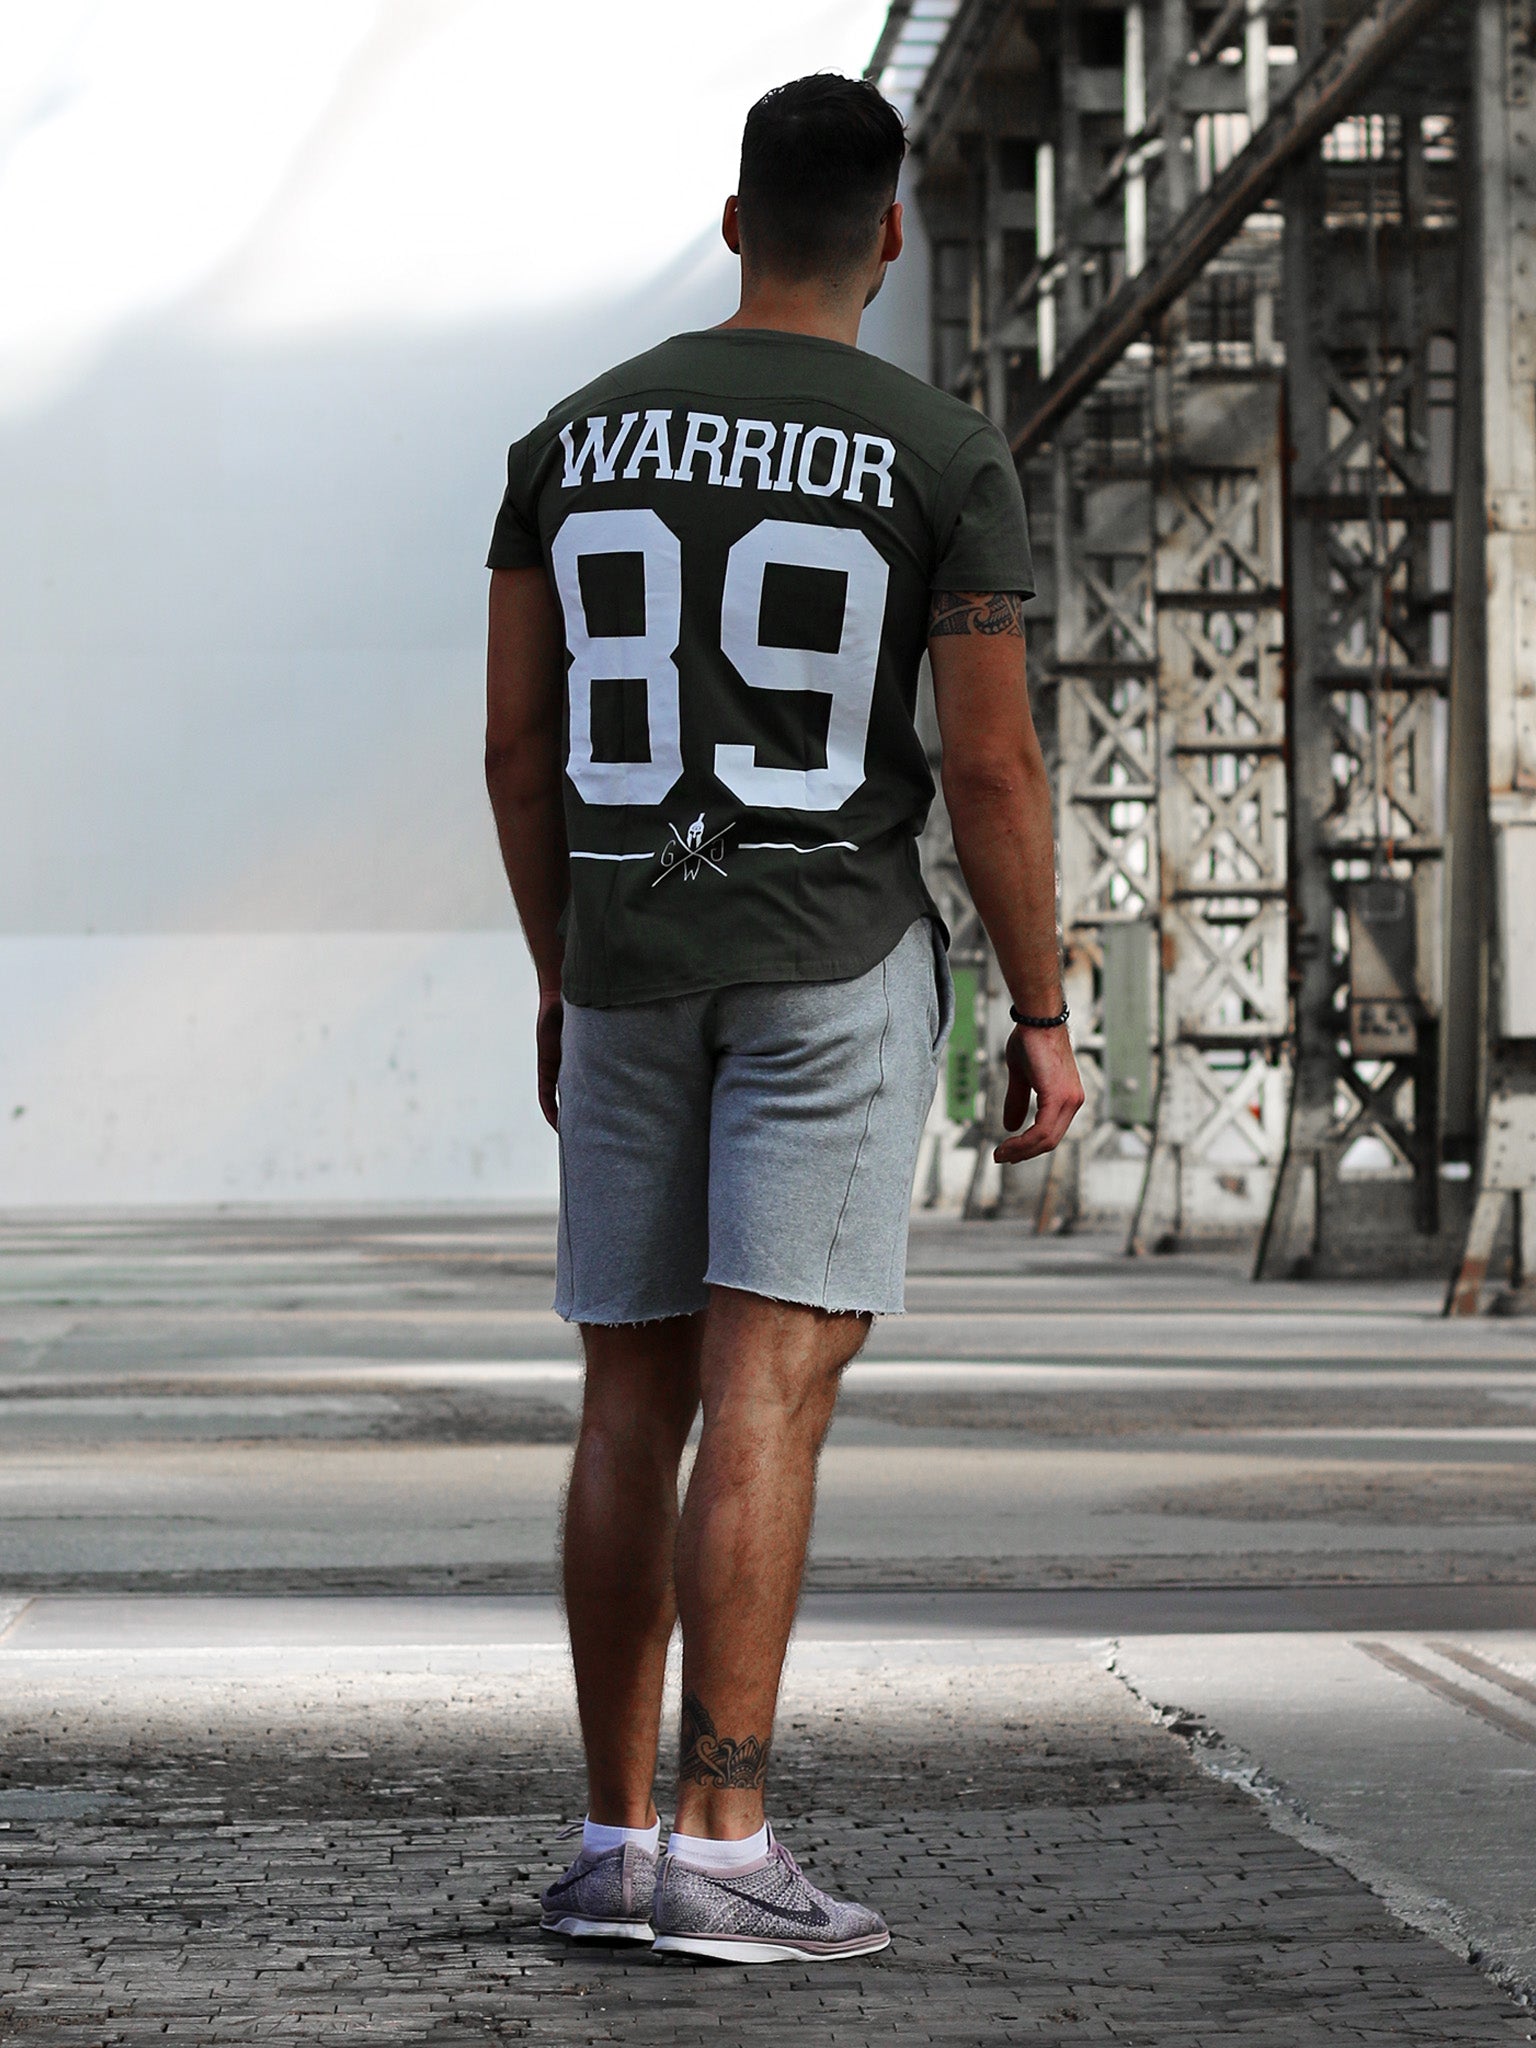 Hochwertiges Warrior T-Shirt aus 100% Baumwolle, ideal für Fitnessstudio und Freizeit.